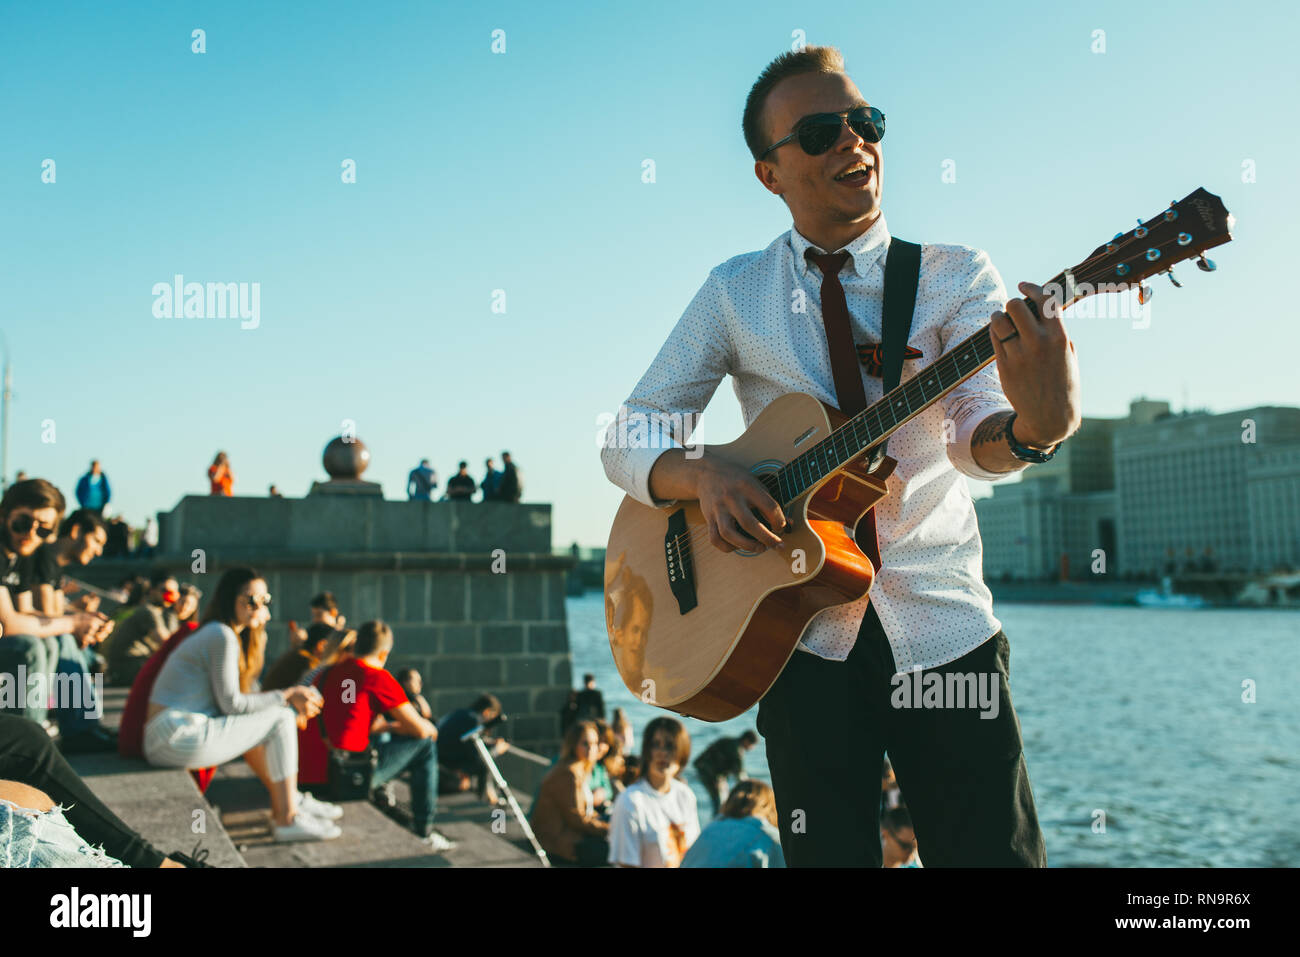 Moscou, Russie - 9 mai 2018 : jeune homme avec des lunettes de soleil, cravate et ruban de Saint-georges joue de la guitare à l'encontre de la rivière. Foule de gens assis et Banque D'Images